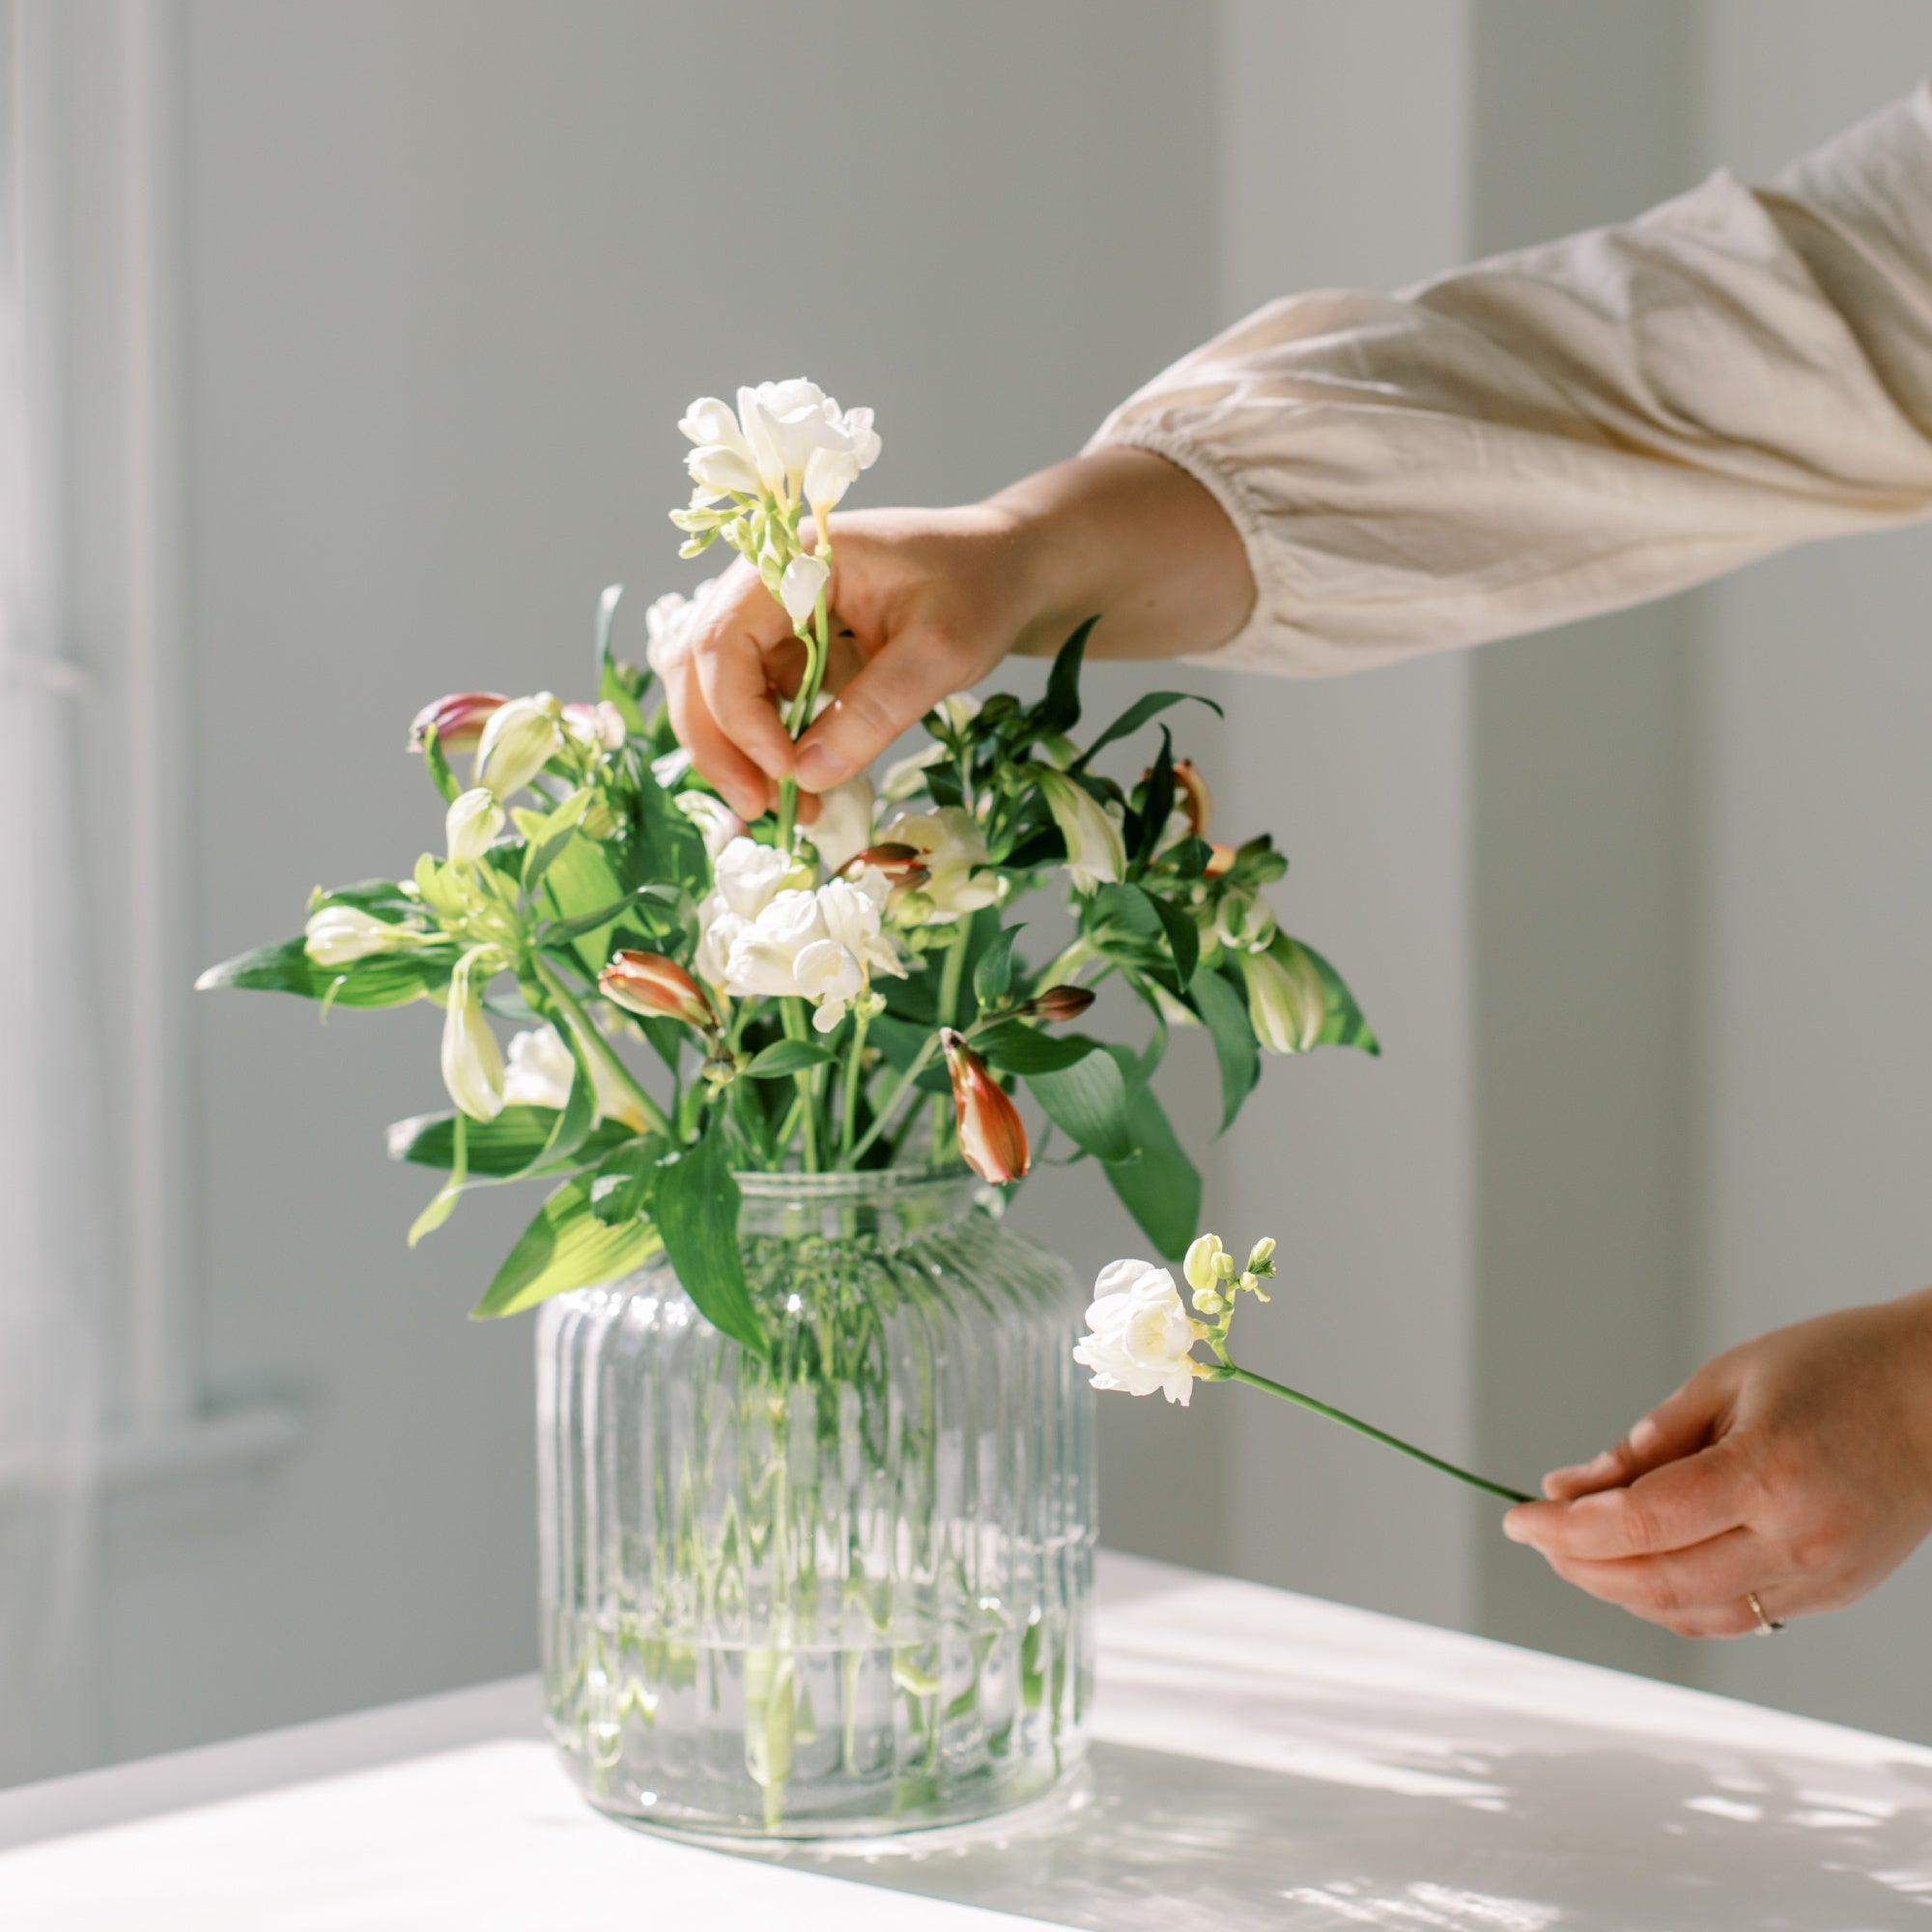 Flower Arranging Workshops for Cancer Patients | Viola Floral